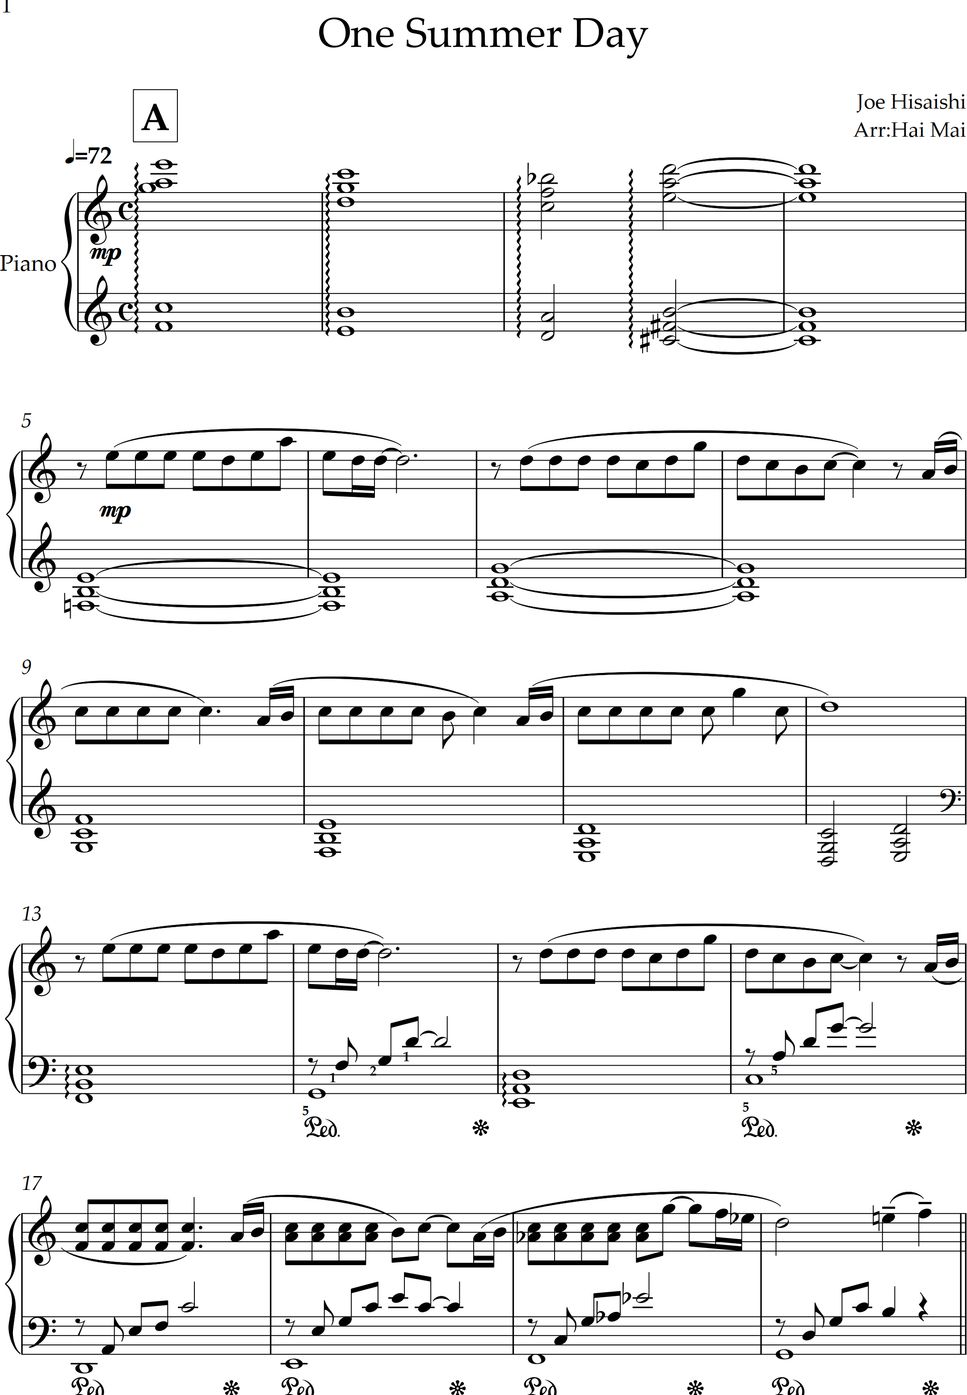 Joe Hisaishi - One Summer's Day for Piano solo by Hai Mai